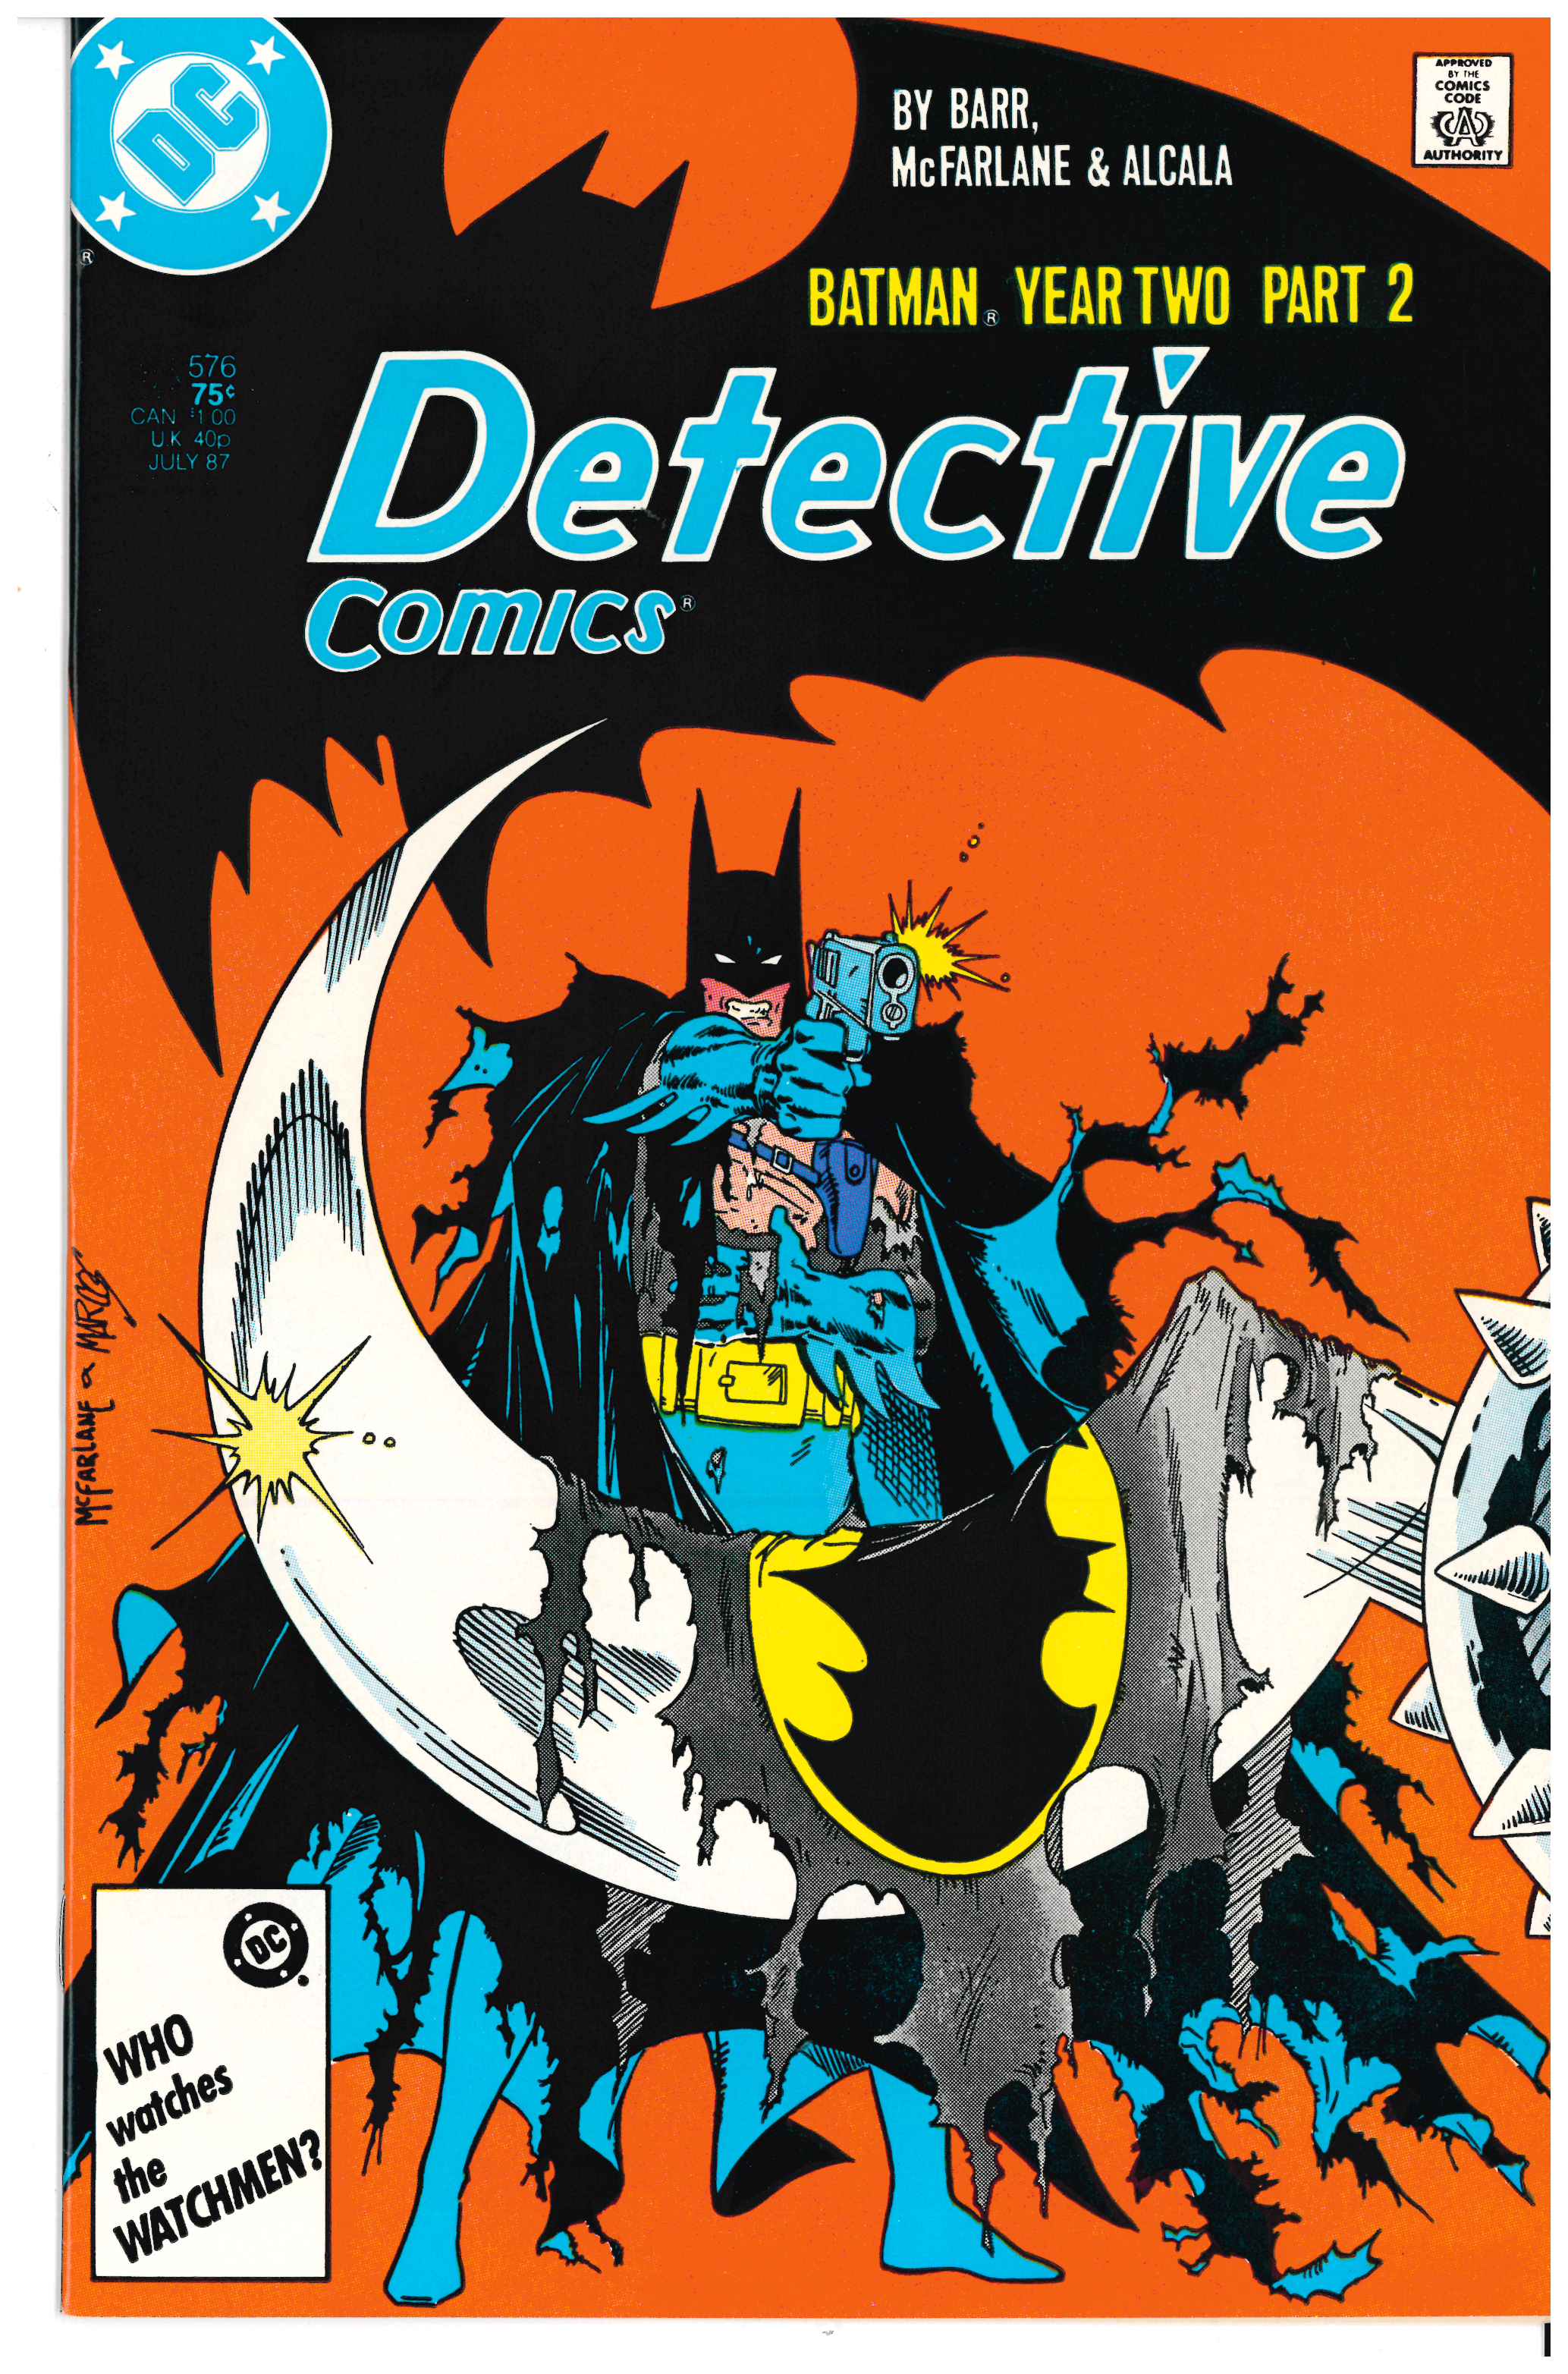 Detective Comics #576